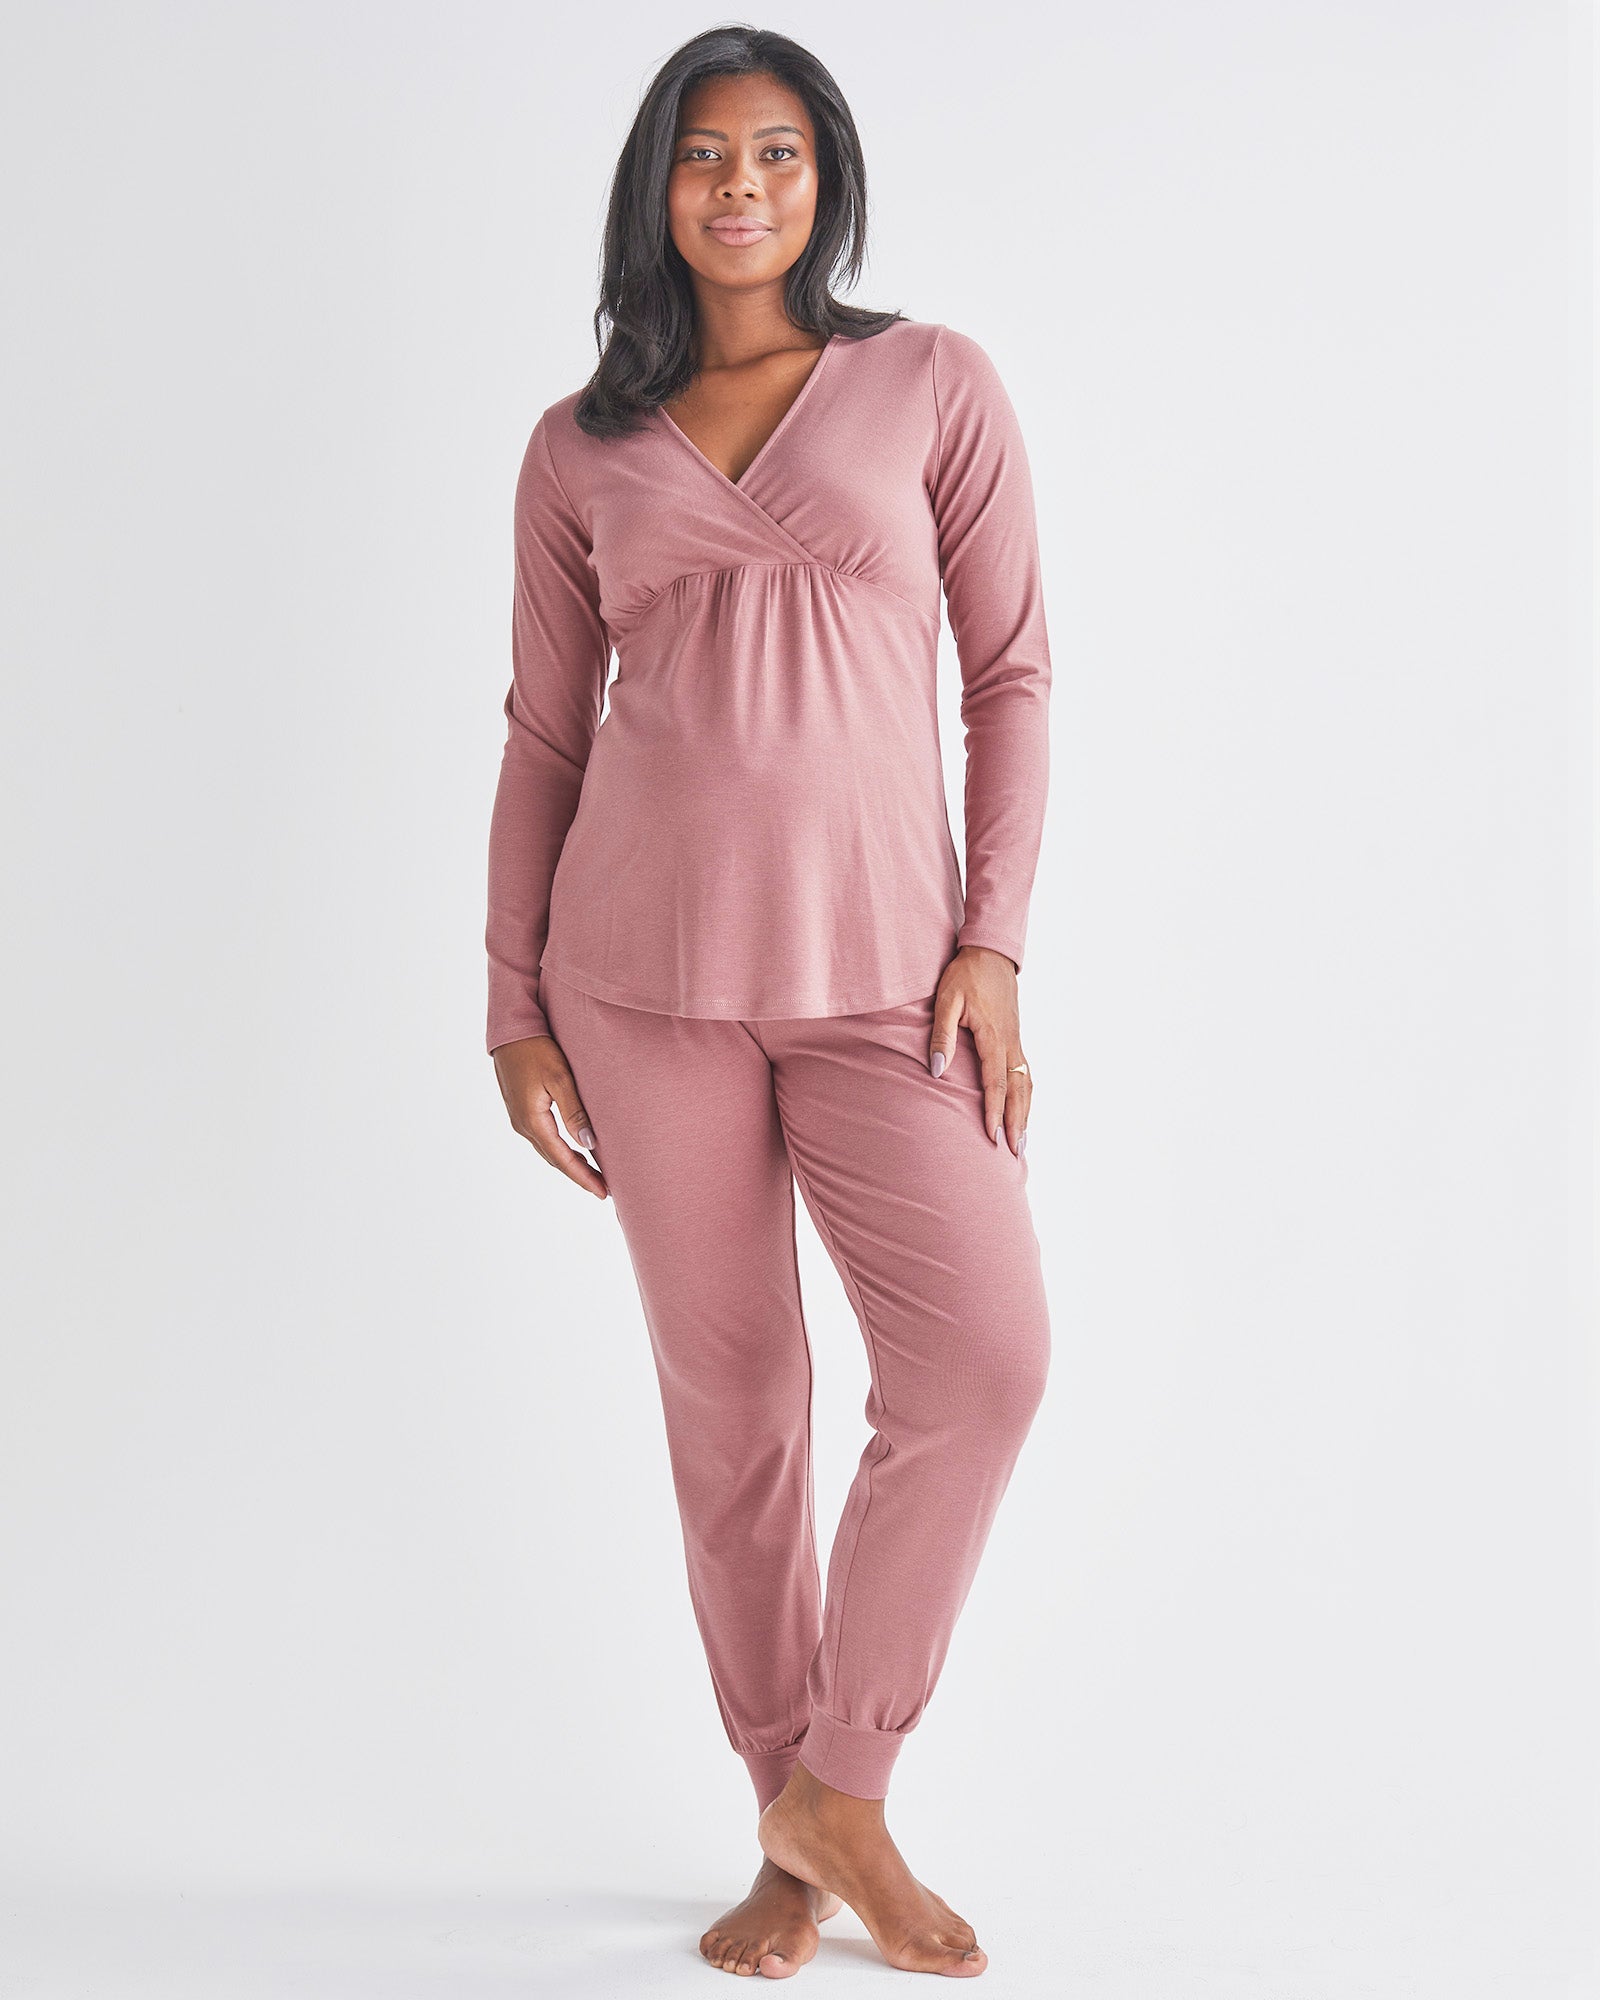 A Pregnant Woman Wearing 2-Piece Kyra Maternity Loungewear/Sleepwear PJ set in Pink from Angel maternity